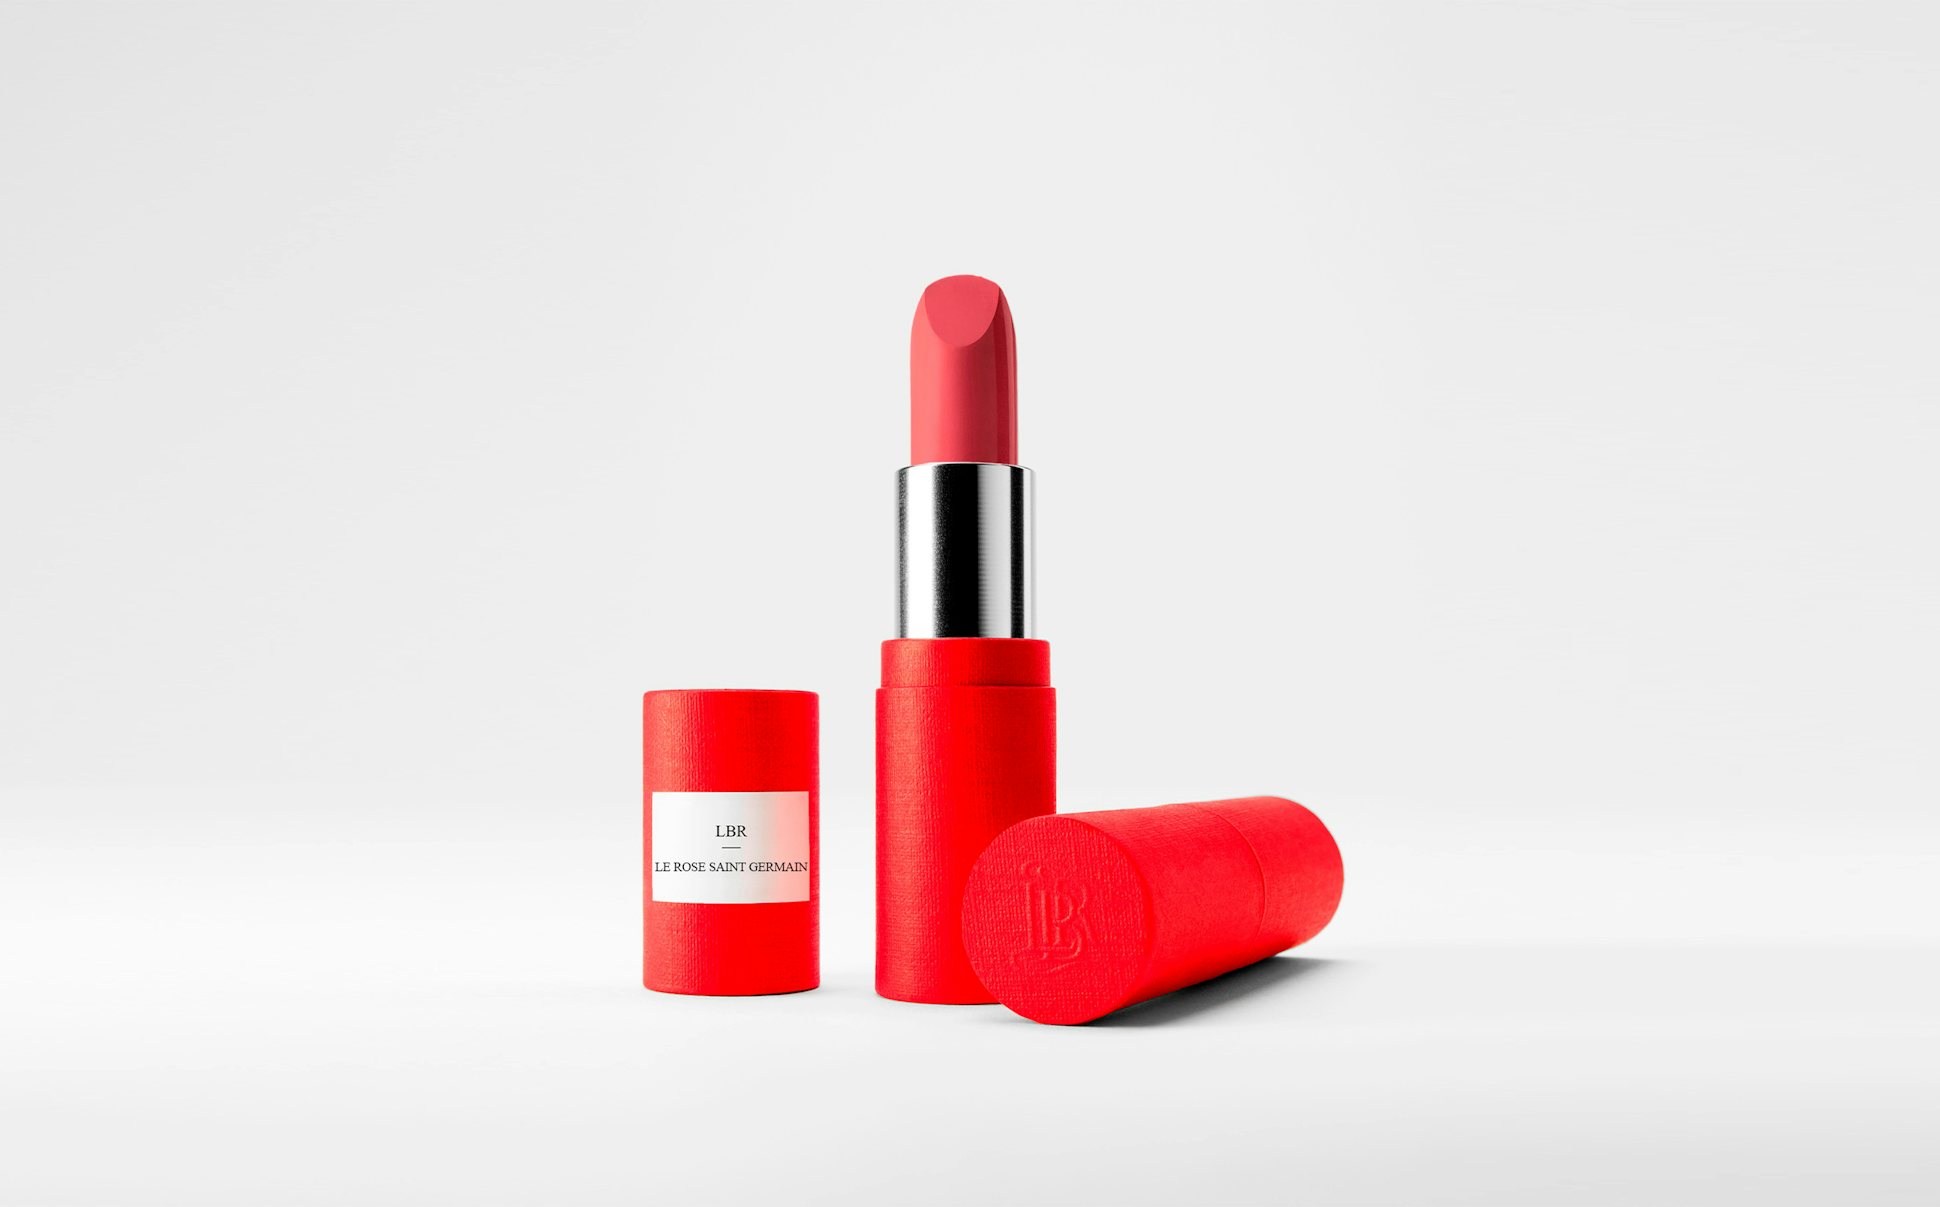 La bouche rouge Le Rose Saint Germain lipstick in the red paper case